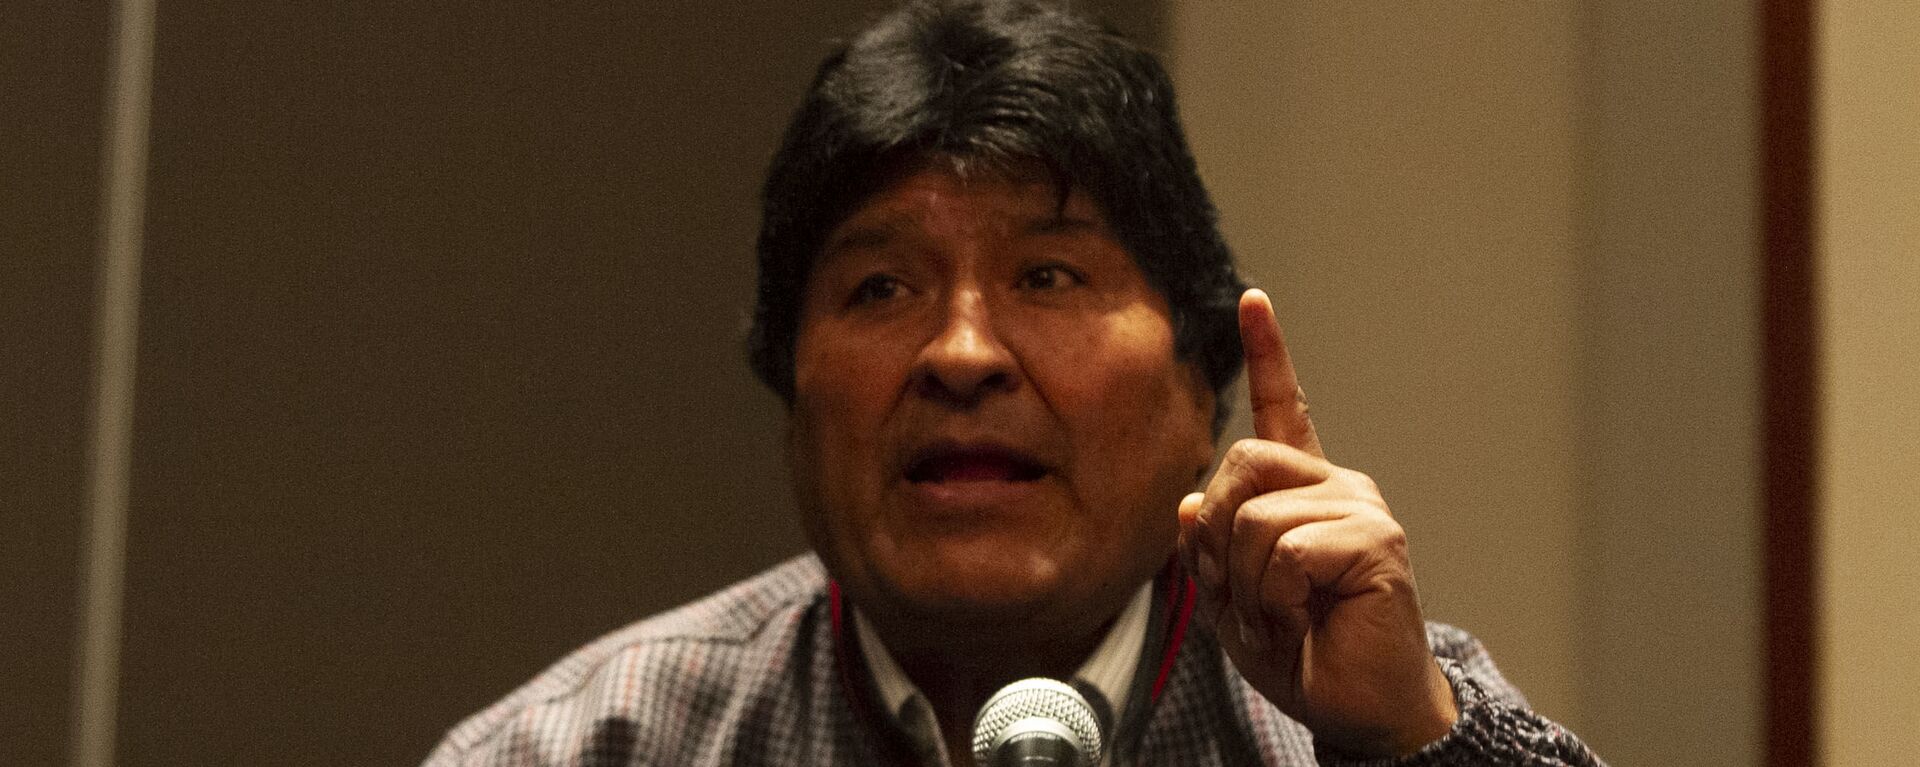 Evo Morales ofrece una rueda de prensa en la Ciudad de México, el 20 de noviembre de 2019 - Sputnik Mundo, 1920, 30.08.2021